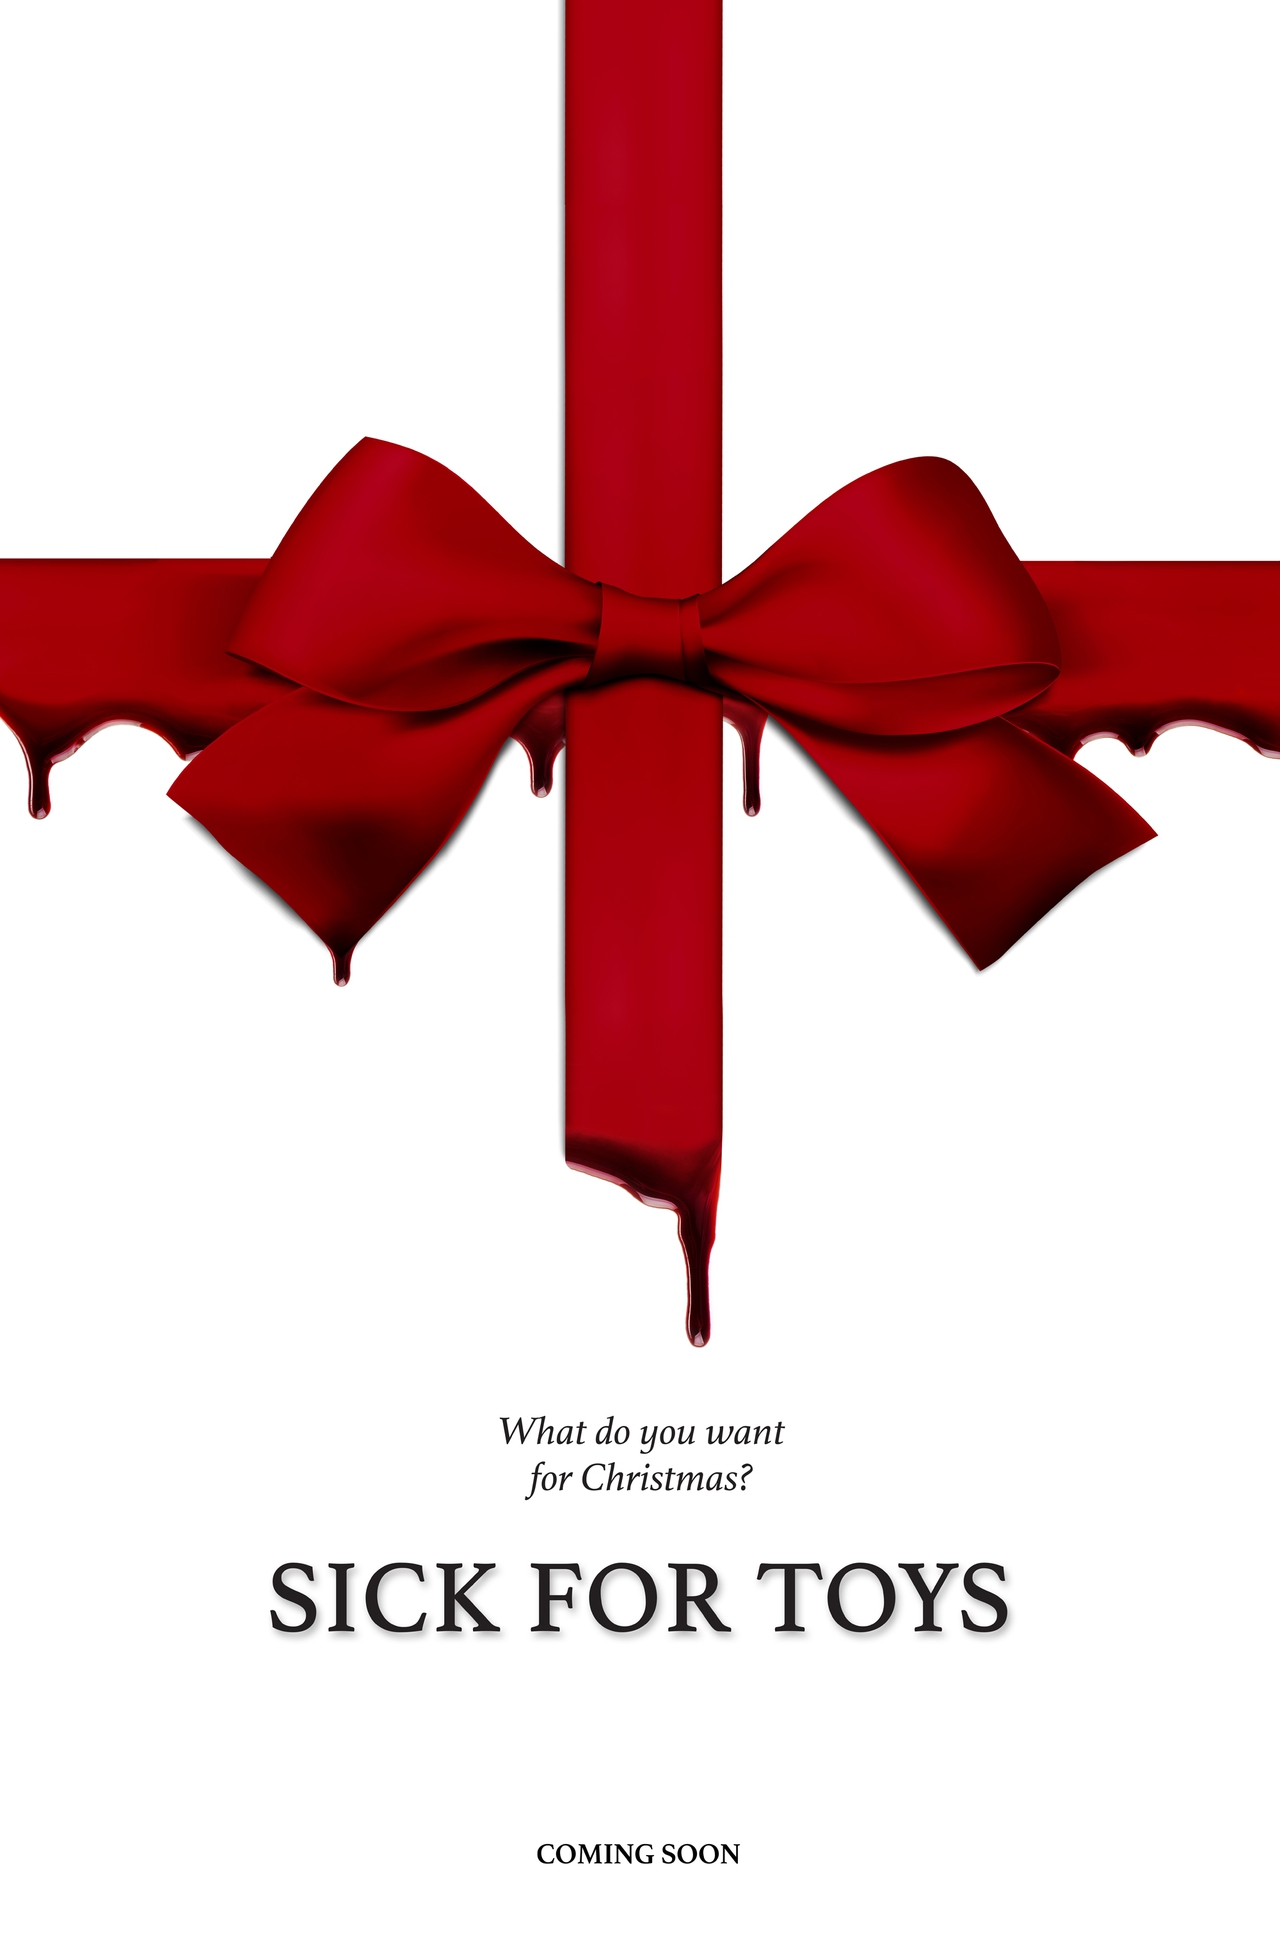  فیلم سینمایی Sick for Toys به کارگردانی David Del Rio